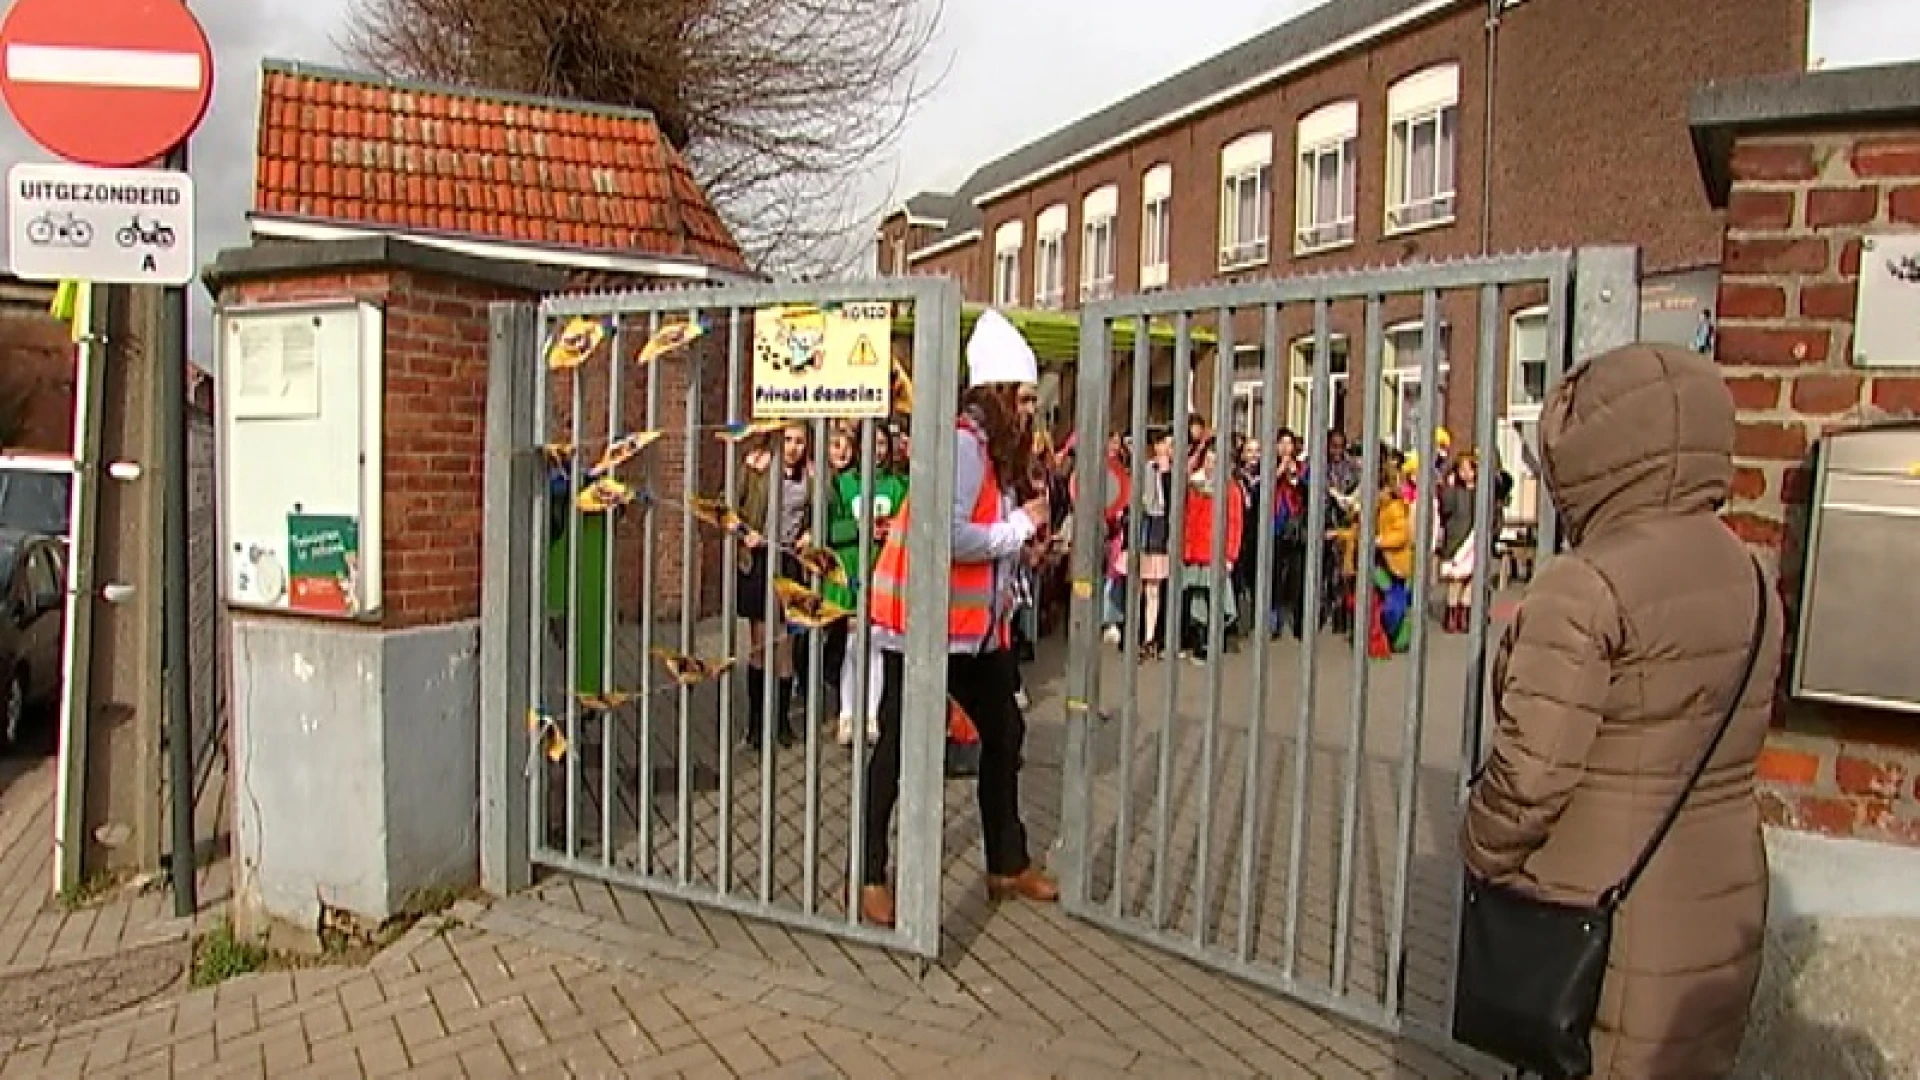 Carnaval op school: in Hakendover trok kindercarnavalstoet door het dorp